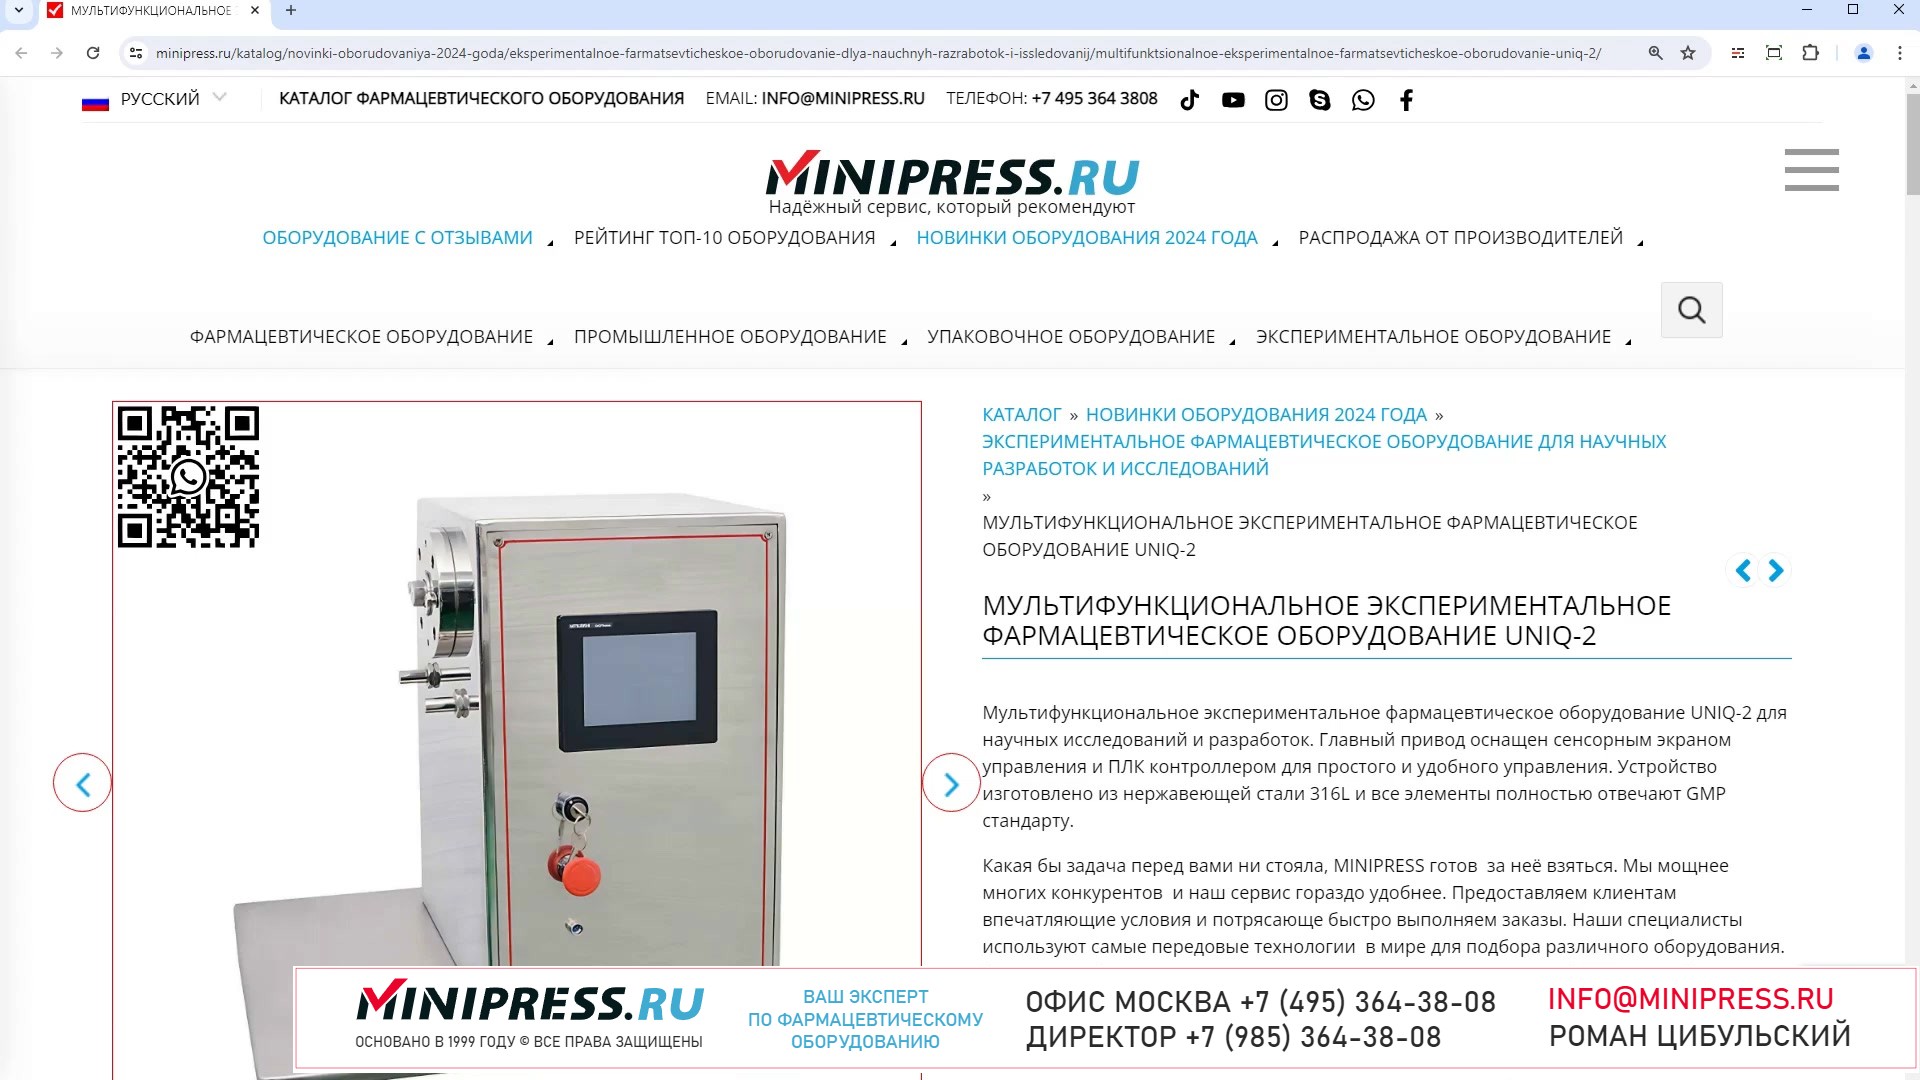 Minipress.ru Мультифункциональное экспериментальное фармацевтическое оборудование UNIQ-2